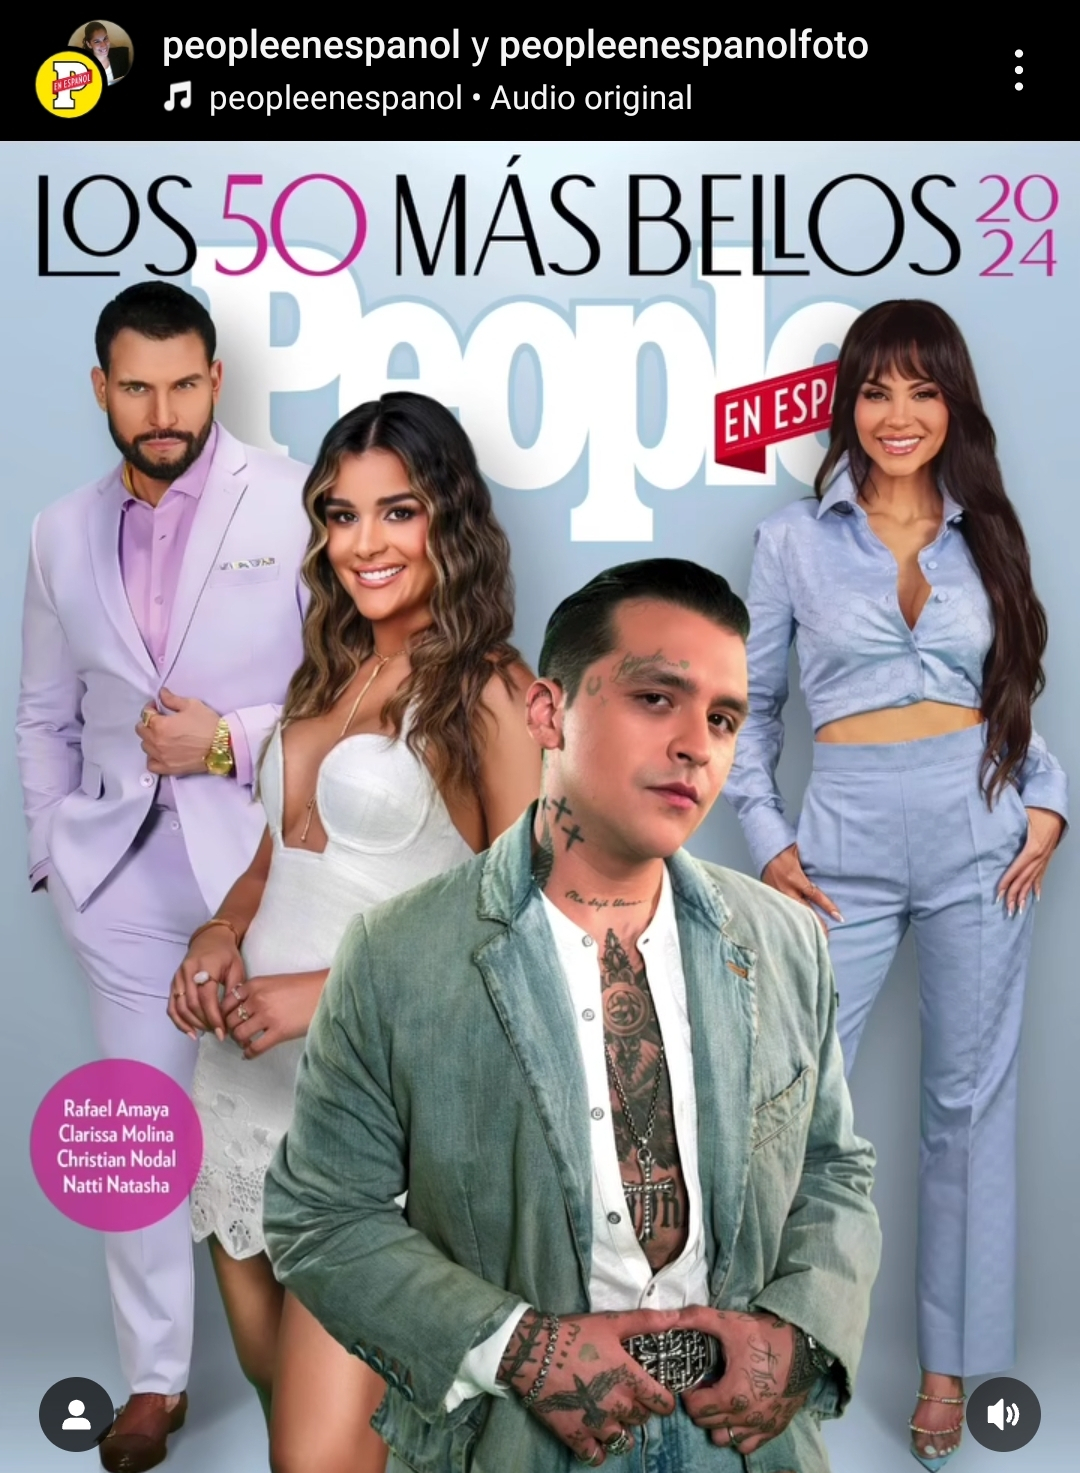 La revista People en español anuncio que el cantante sería parte de su portada se le suma un éxito más a Christian Nodal. Foto: Instagram/peopleenespanol